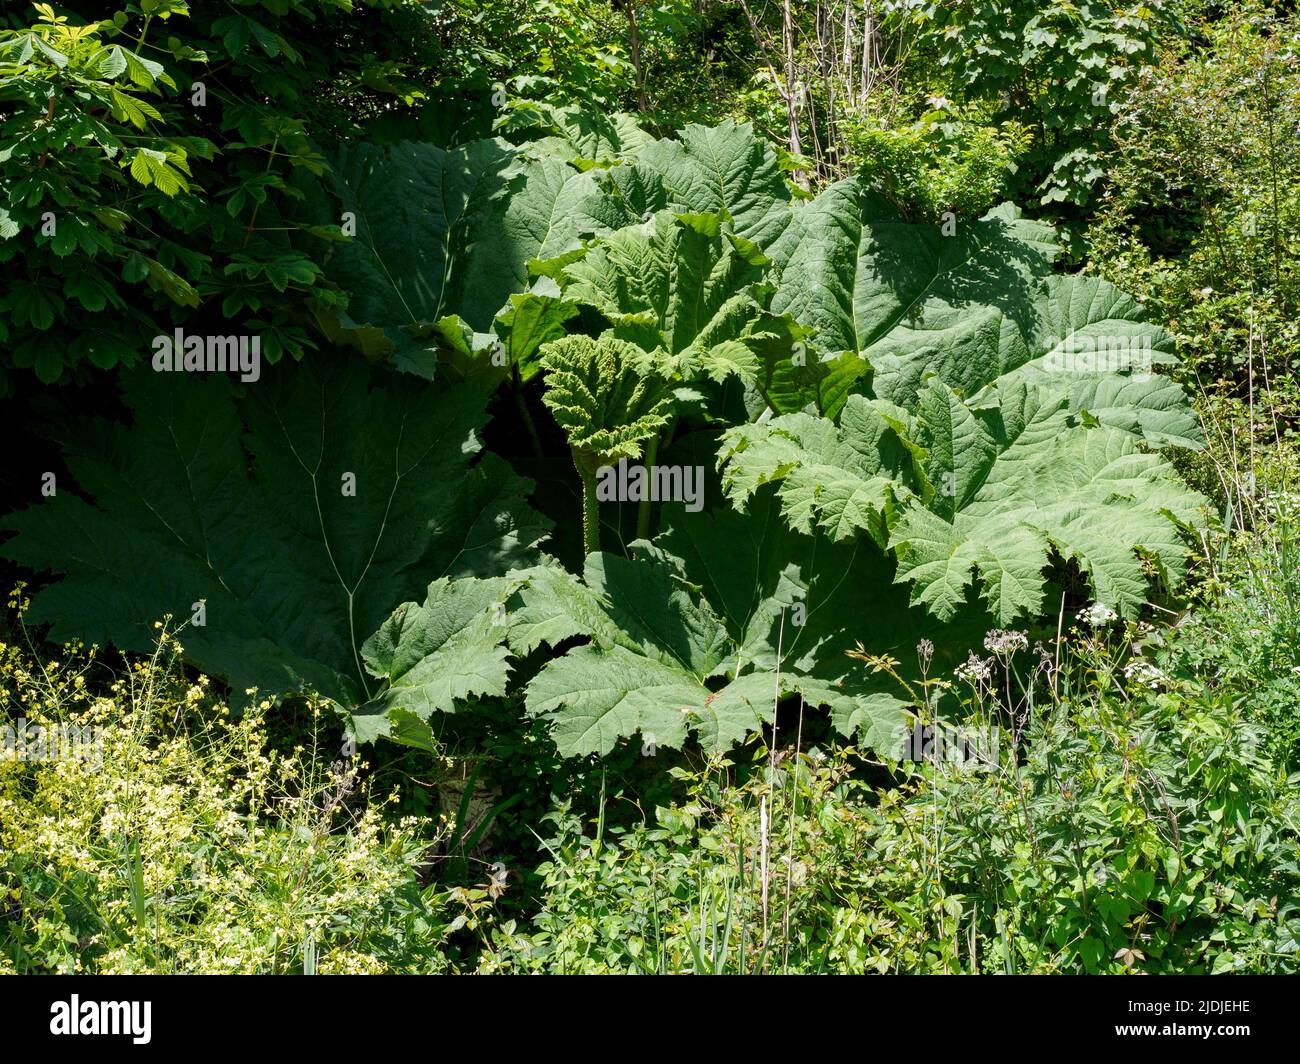 Gunnera manicata, Gunnera tinctoria - Giant Rhubarb, Giant Gunnera, UK Stock Photo